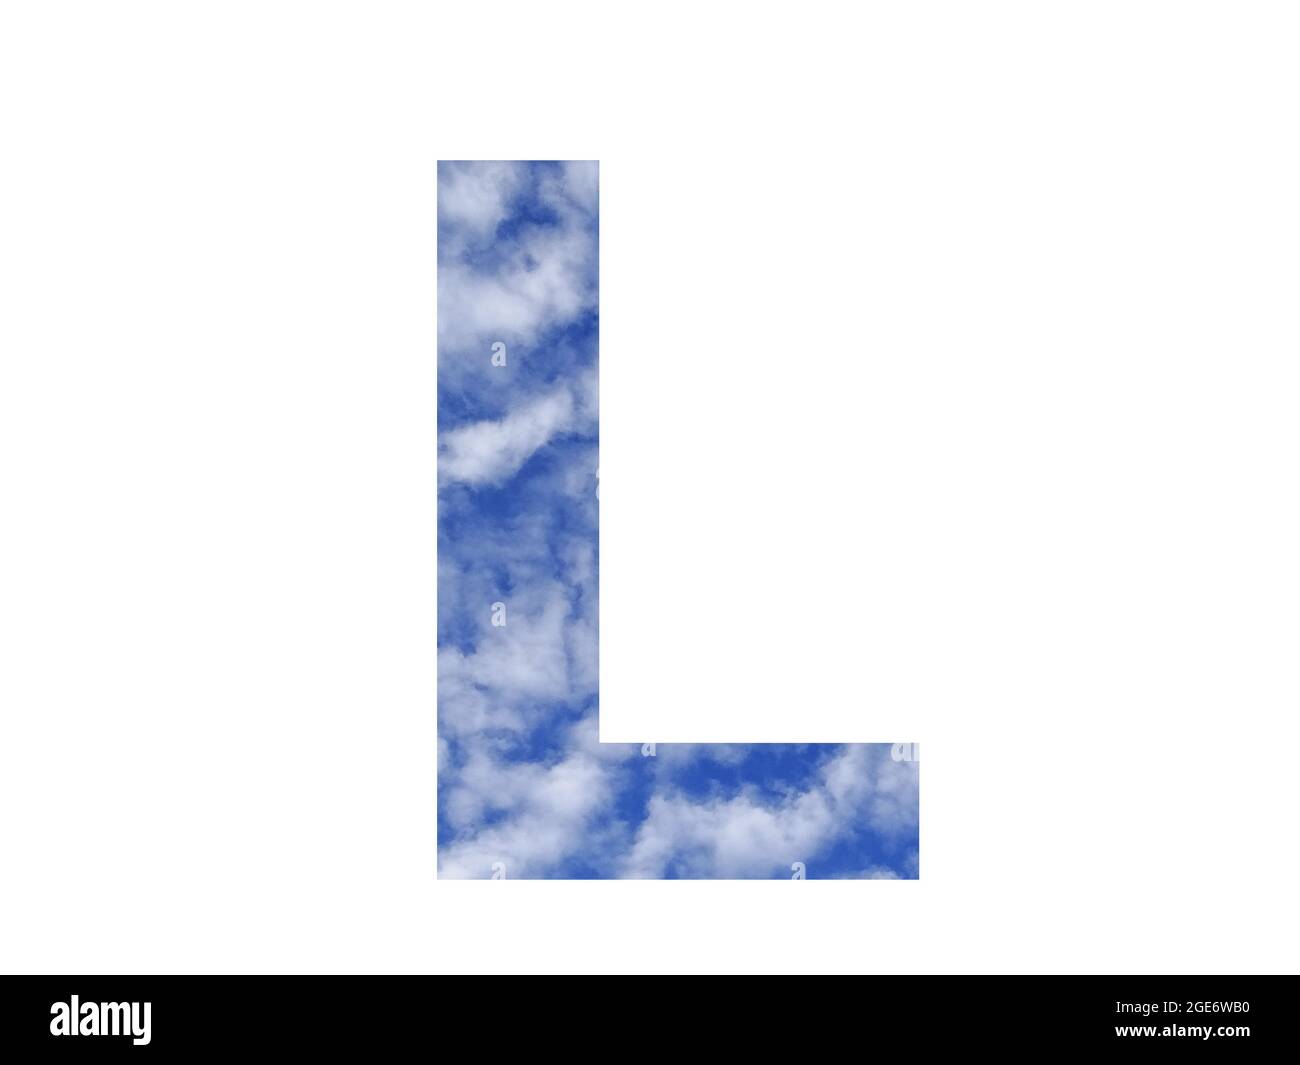 Lettera L dell'alfabeto fatta con cielo blu e nuvole bianche, isolata su sfondo bianco Foto Stock